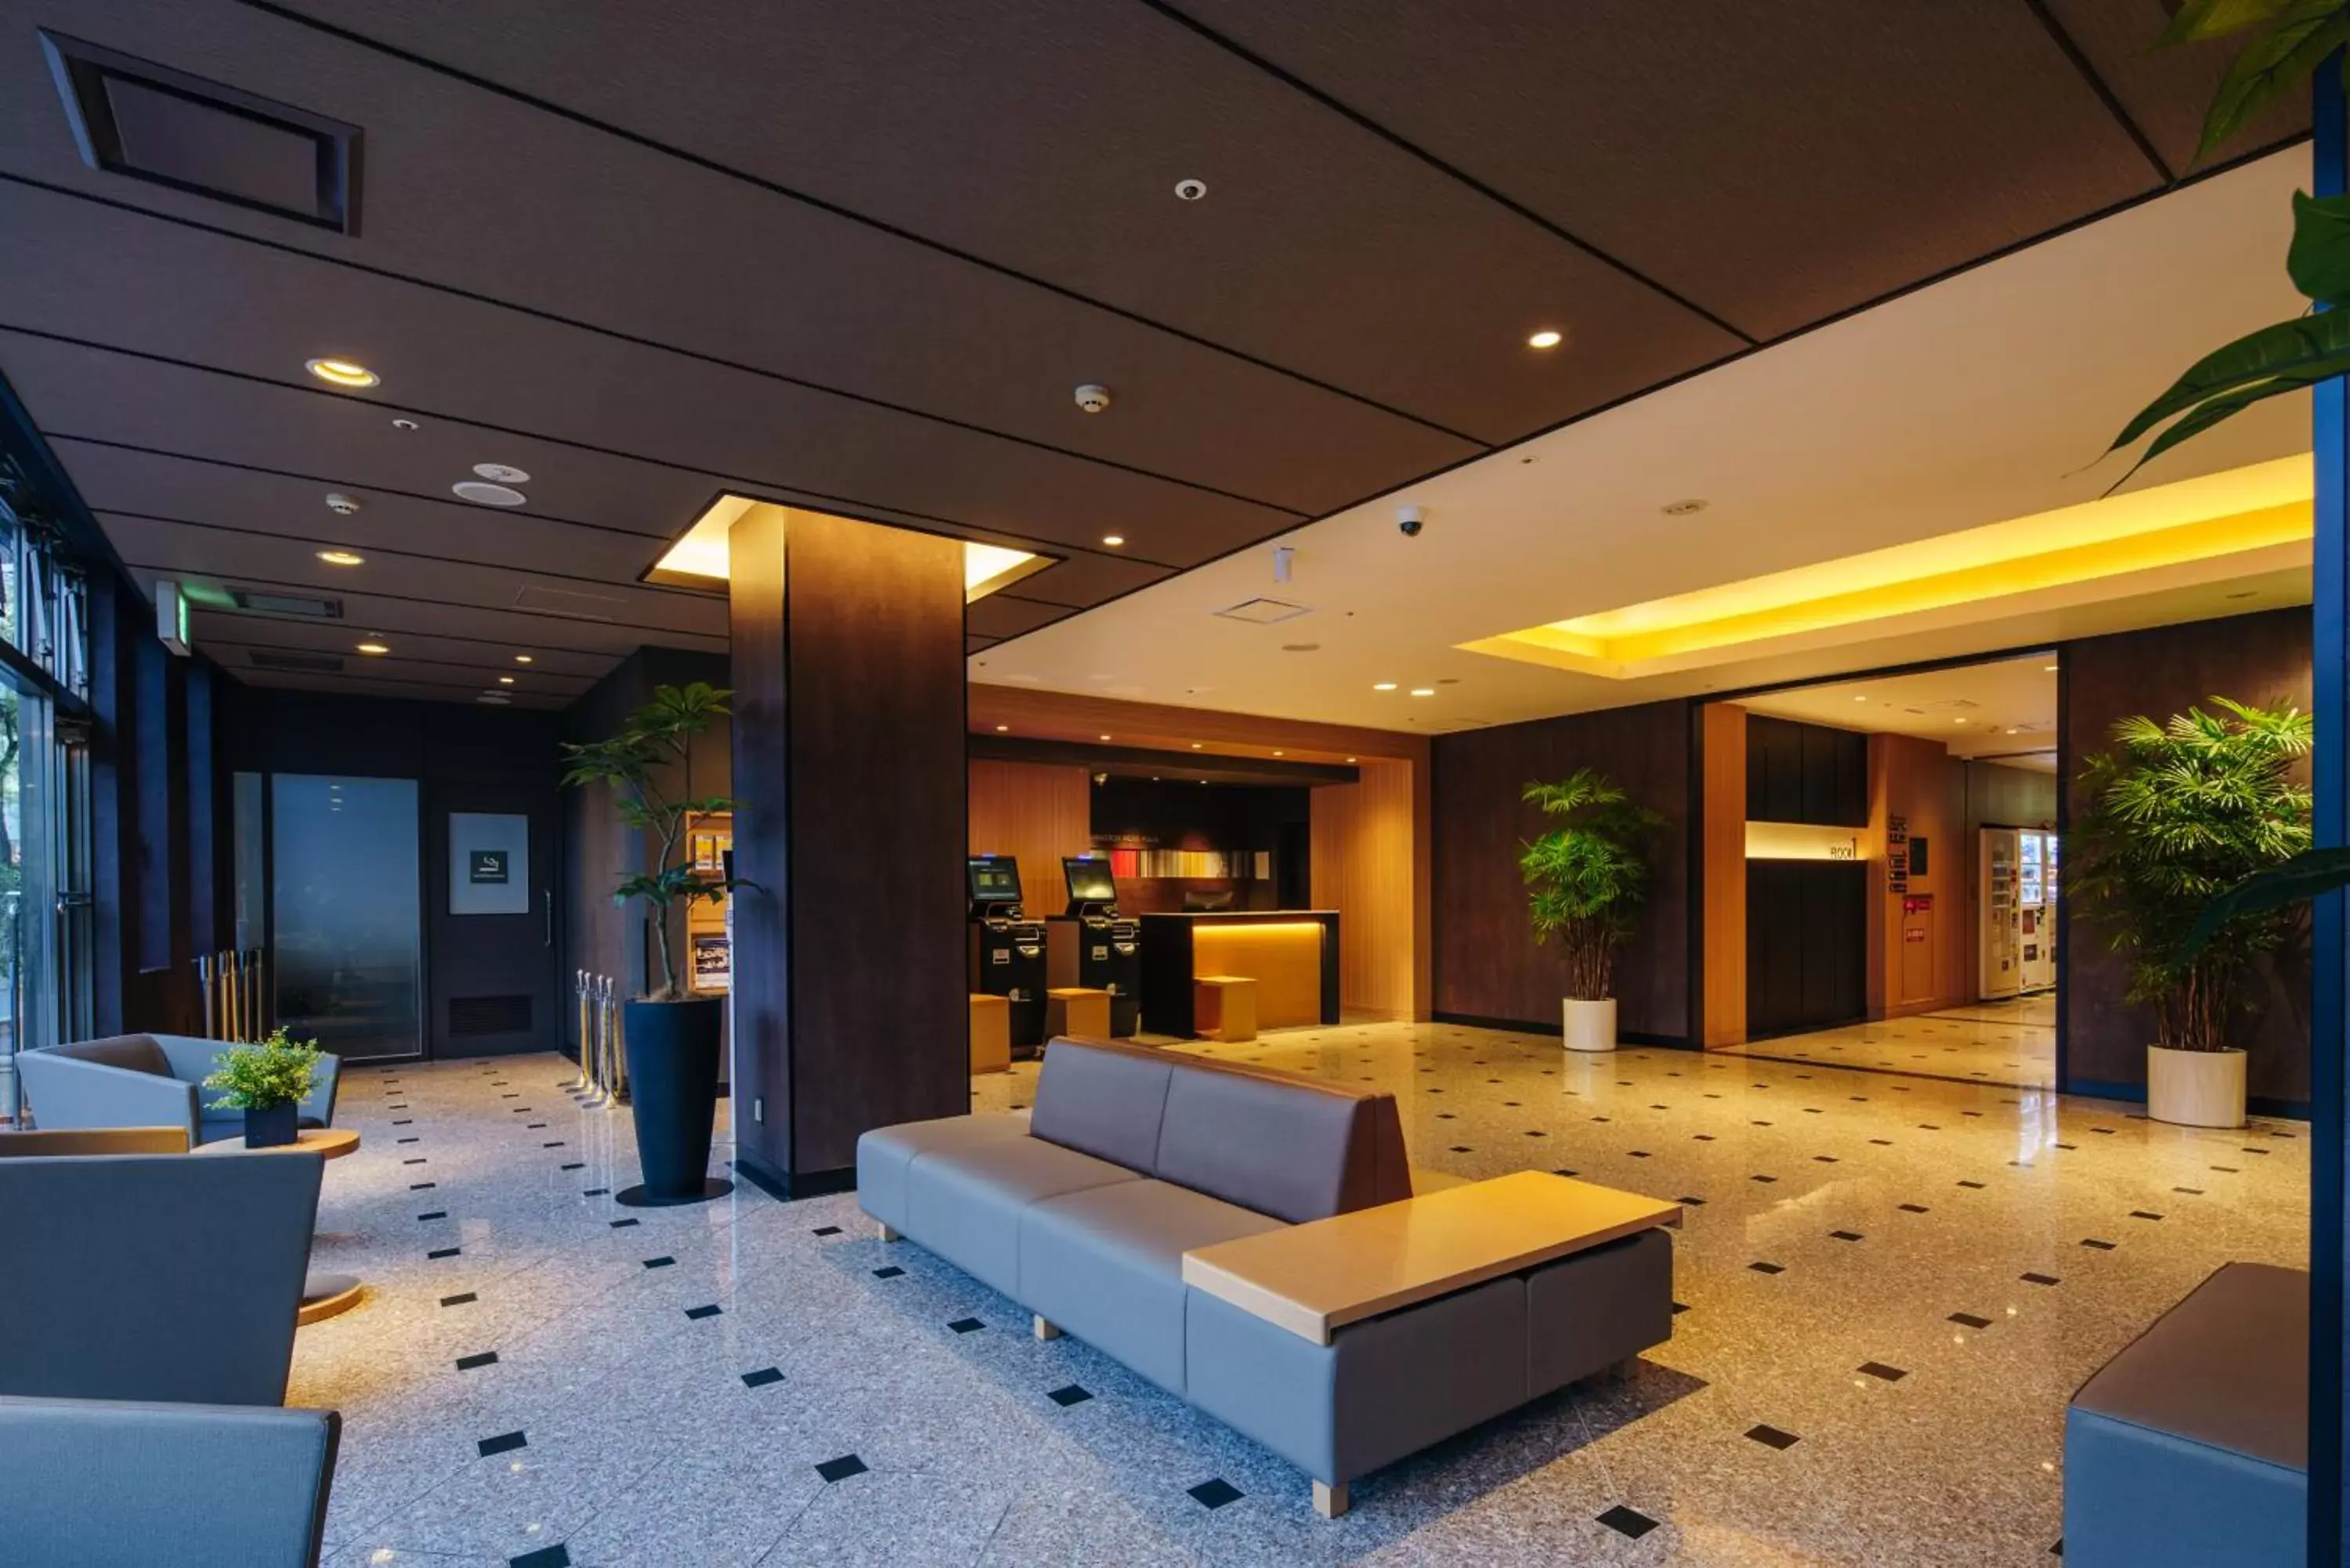 Lobby or reception, Lobby/Reception in Hakata Nakasu Washington Hotel Plaza